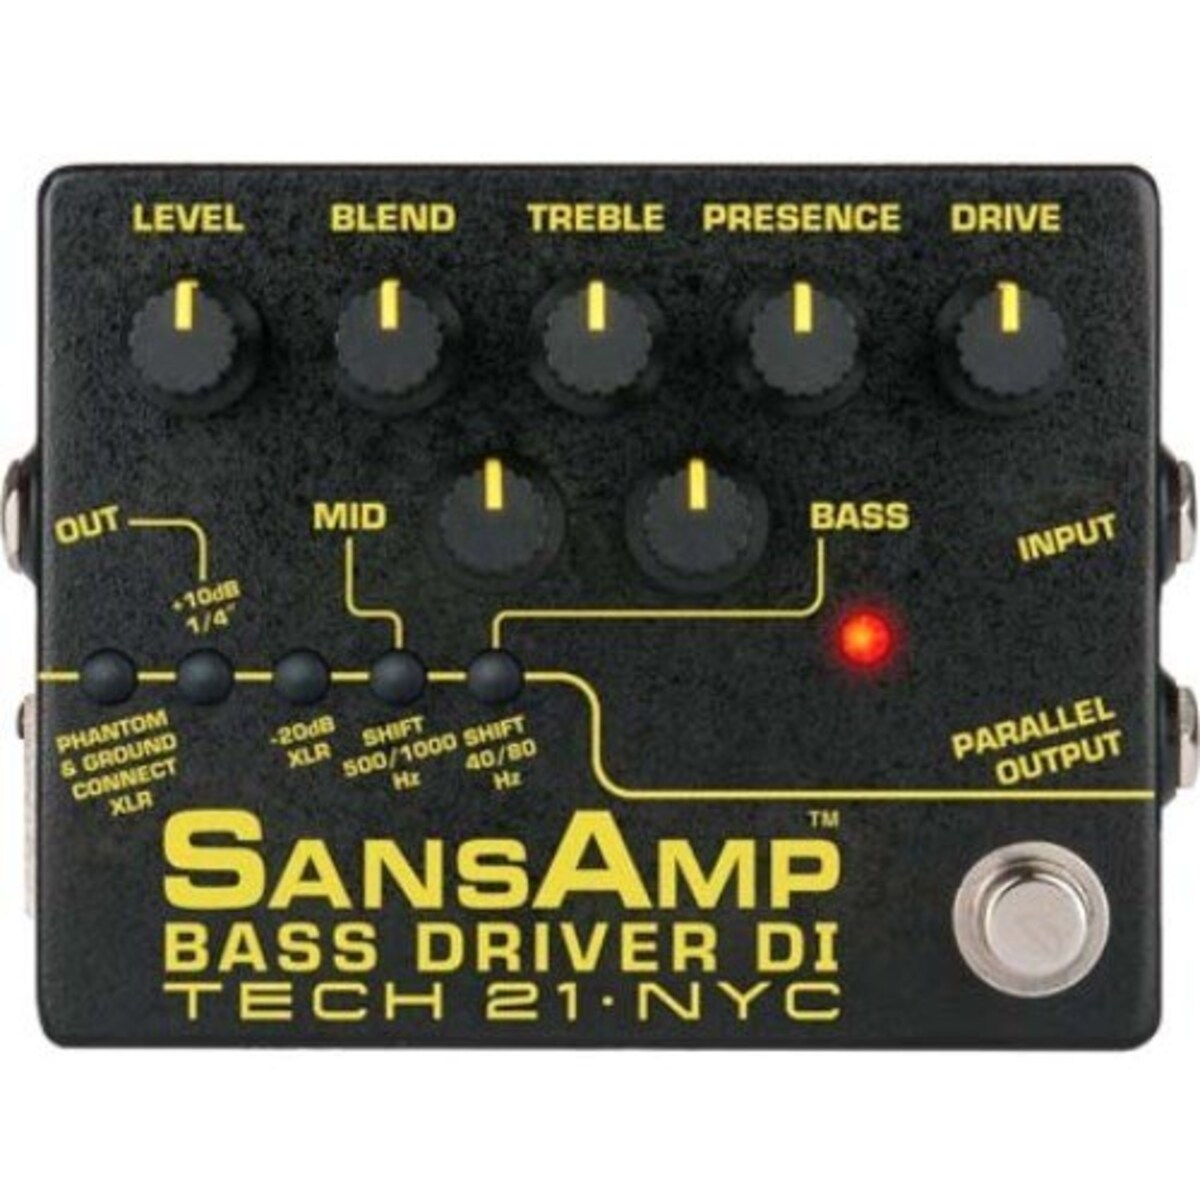 SANSAMP 『BASS DRIVER DI V2』 ベース専用ドライブエフェクター&アンプシュミレーター&DI機能搭載 [国内正規品]